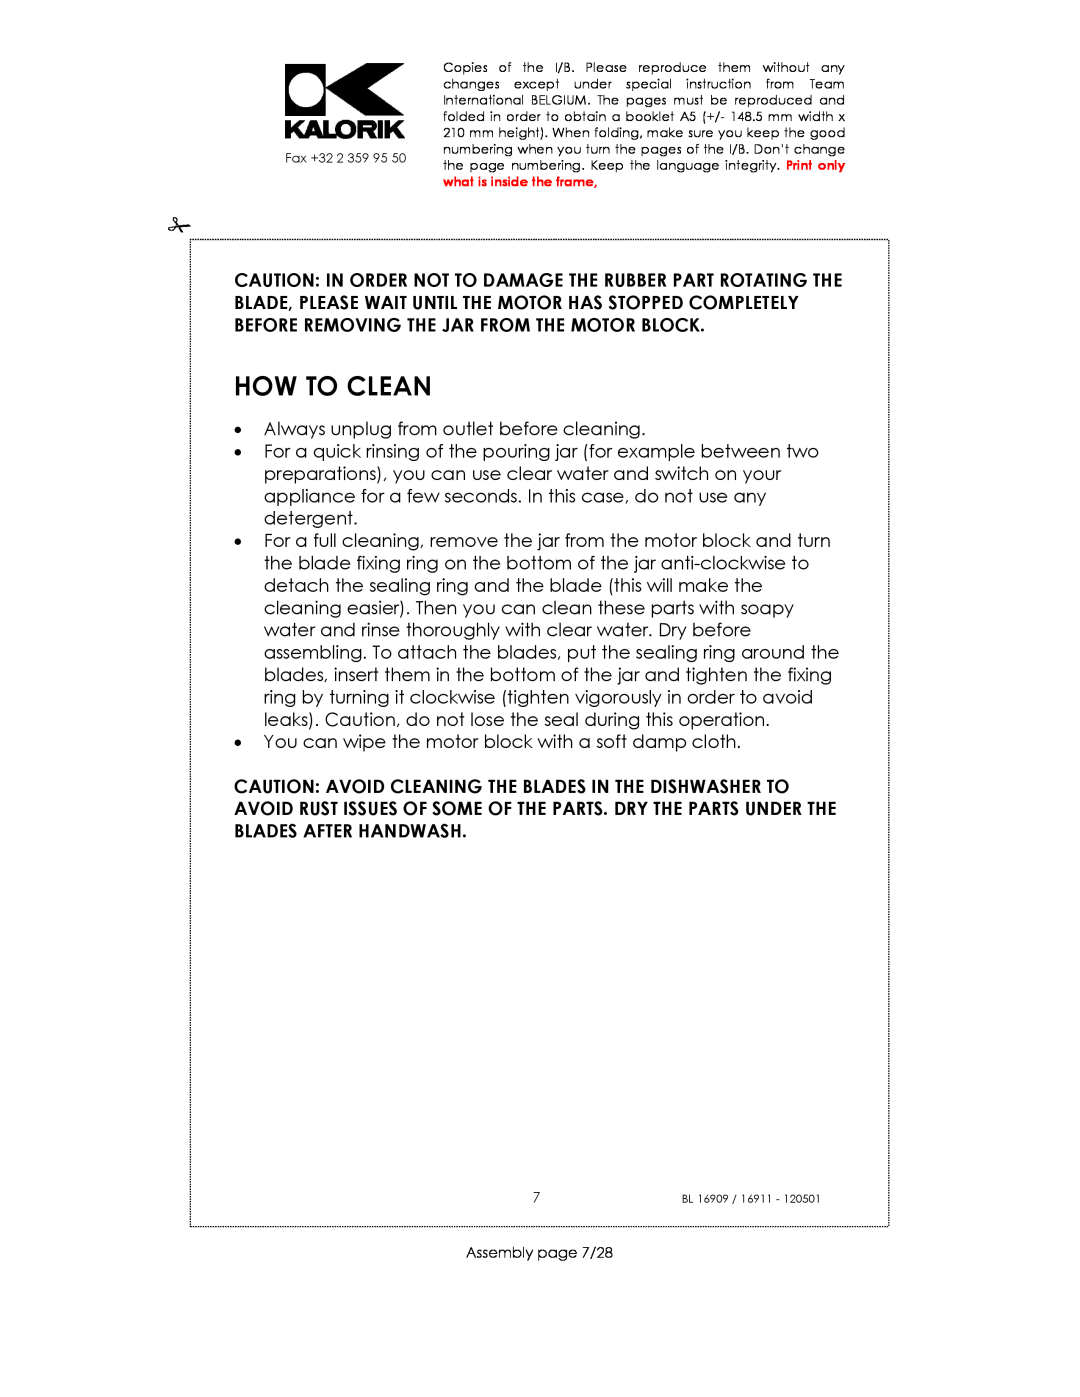 Kalorik 33029, usk bl 16909, 16911 manual How To Clean 